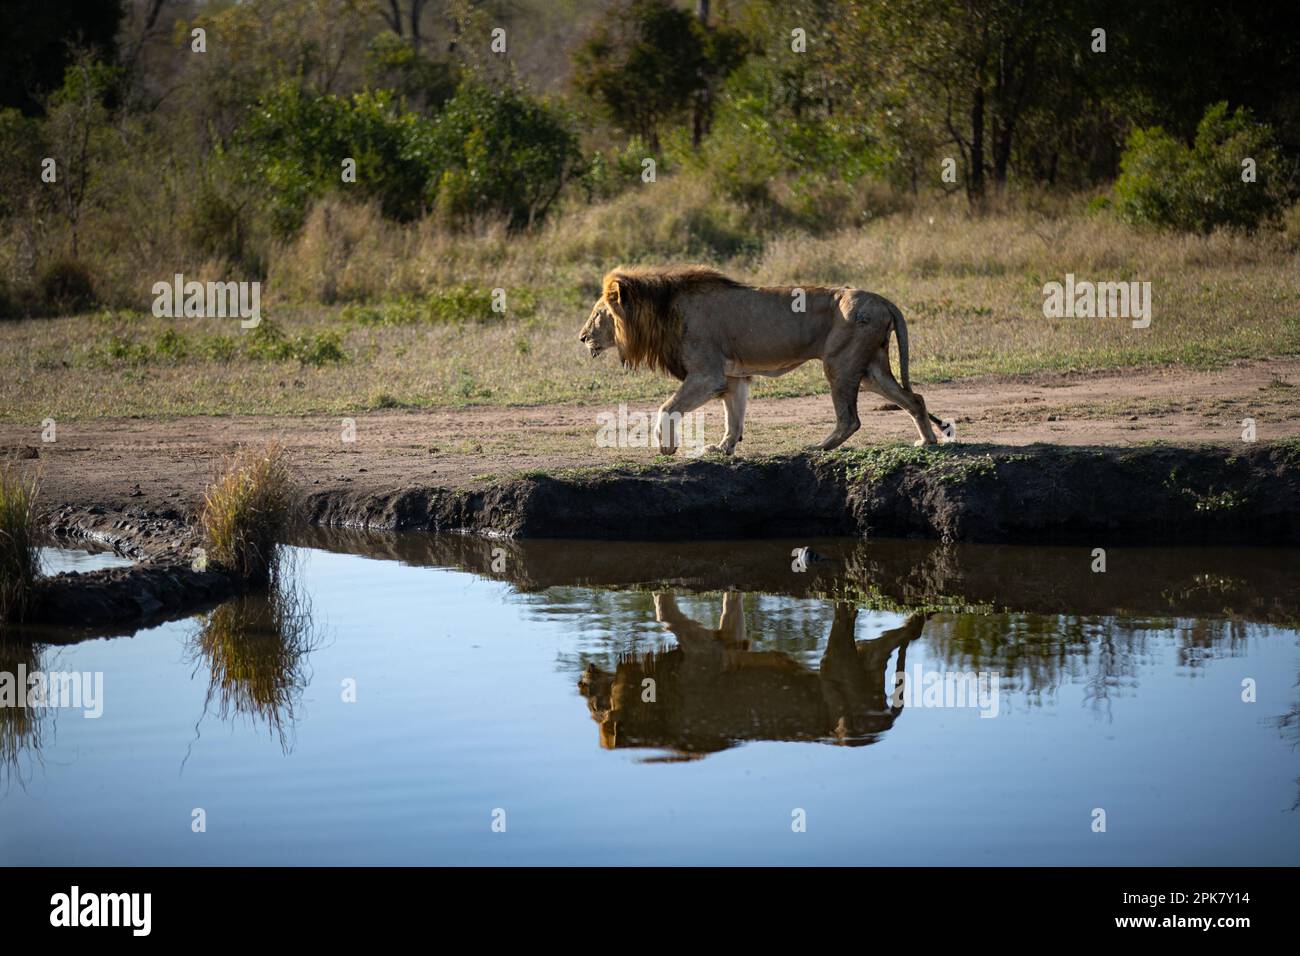 Ein männlicher Löwe, Panthera leo, der neben einem Damm spaziert, Reflexion im Wasser. Stockfoto